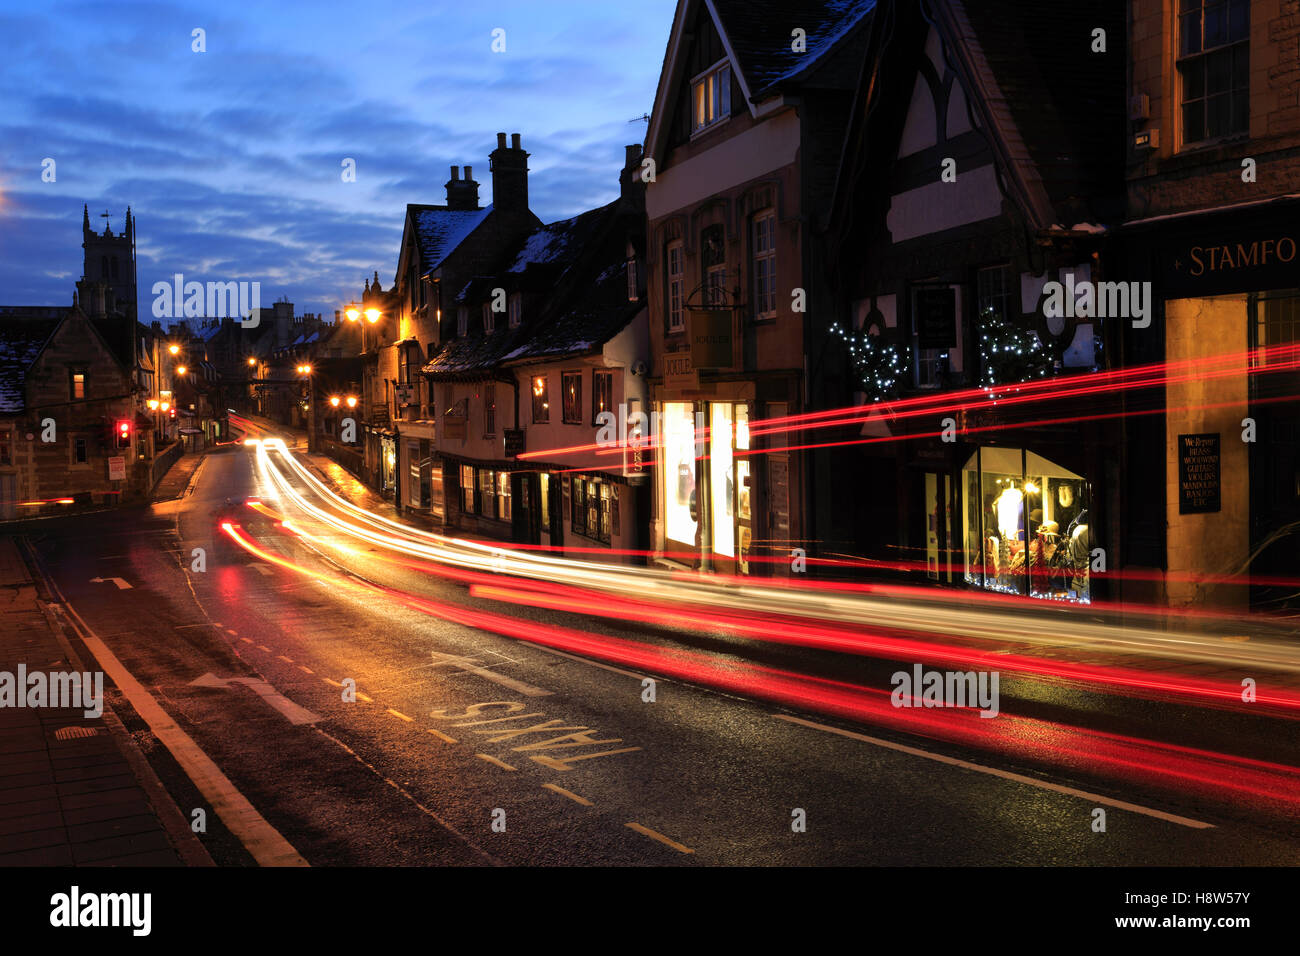 L'hiver, Janvier, Février, Les Lumières de Noël et de trafic et des sentiers, l'Stamford town ; ; ; l'Angleterre Lincolnshire UK Banque D'Images